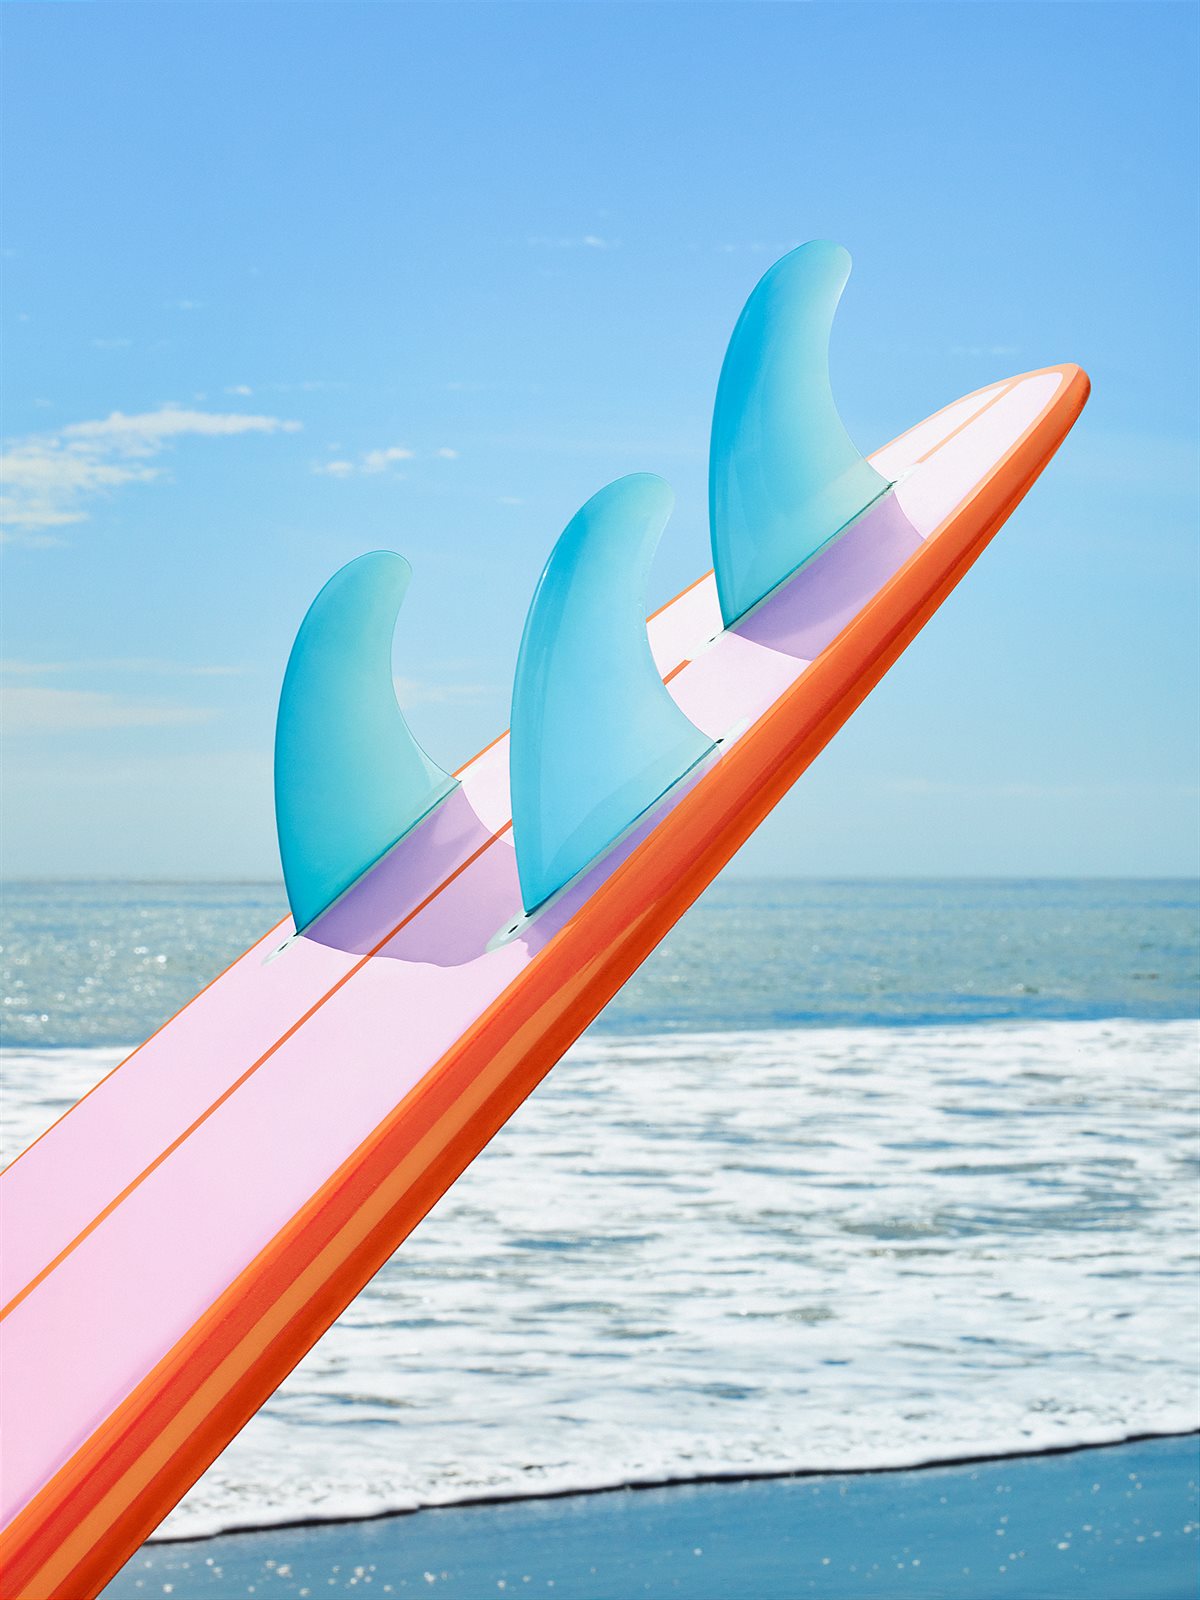 LV_ON THE BEACH_SURFBOARD 02